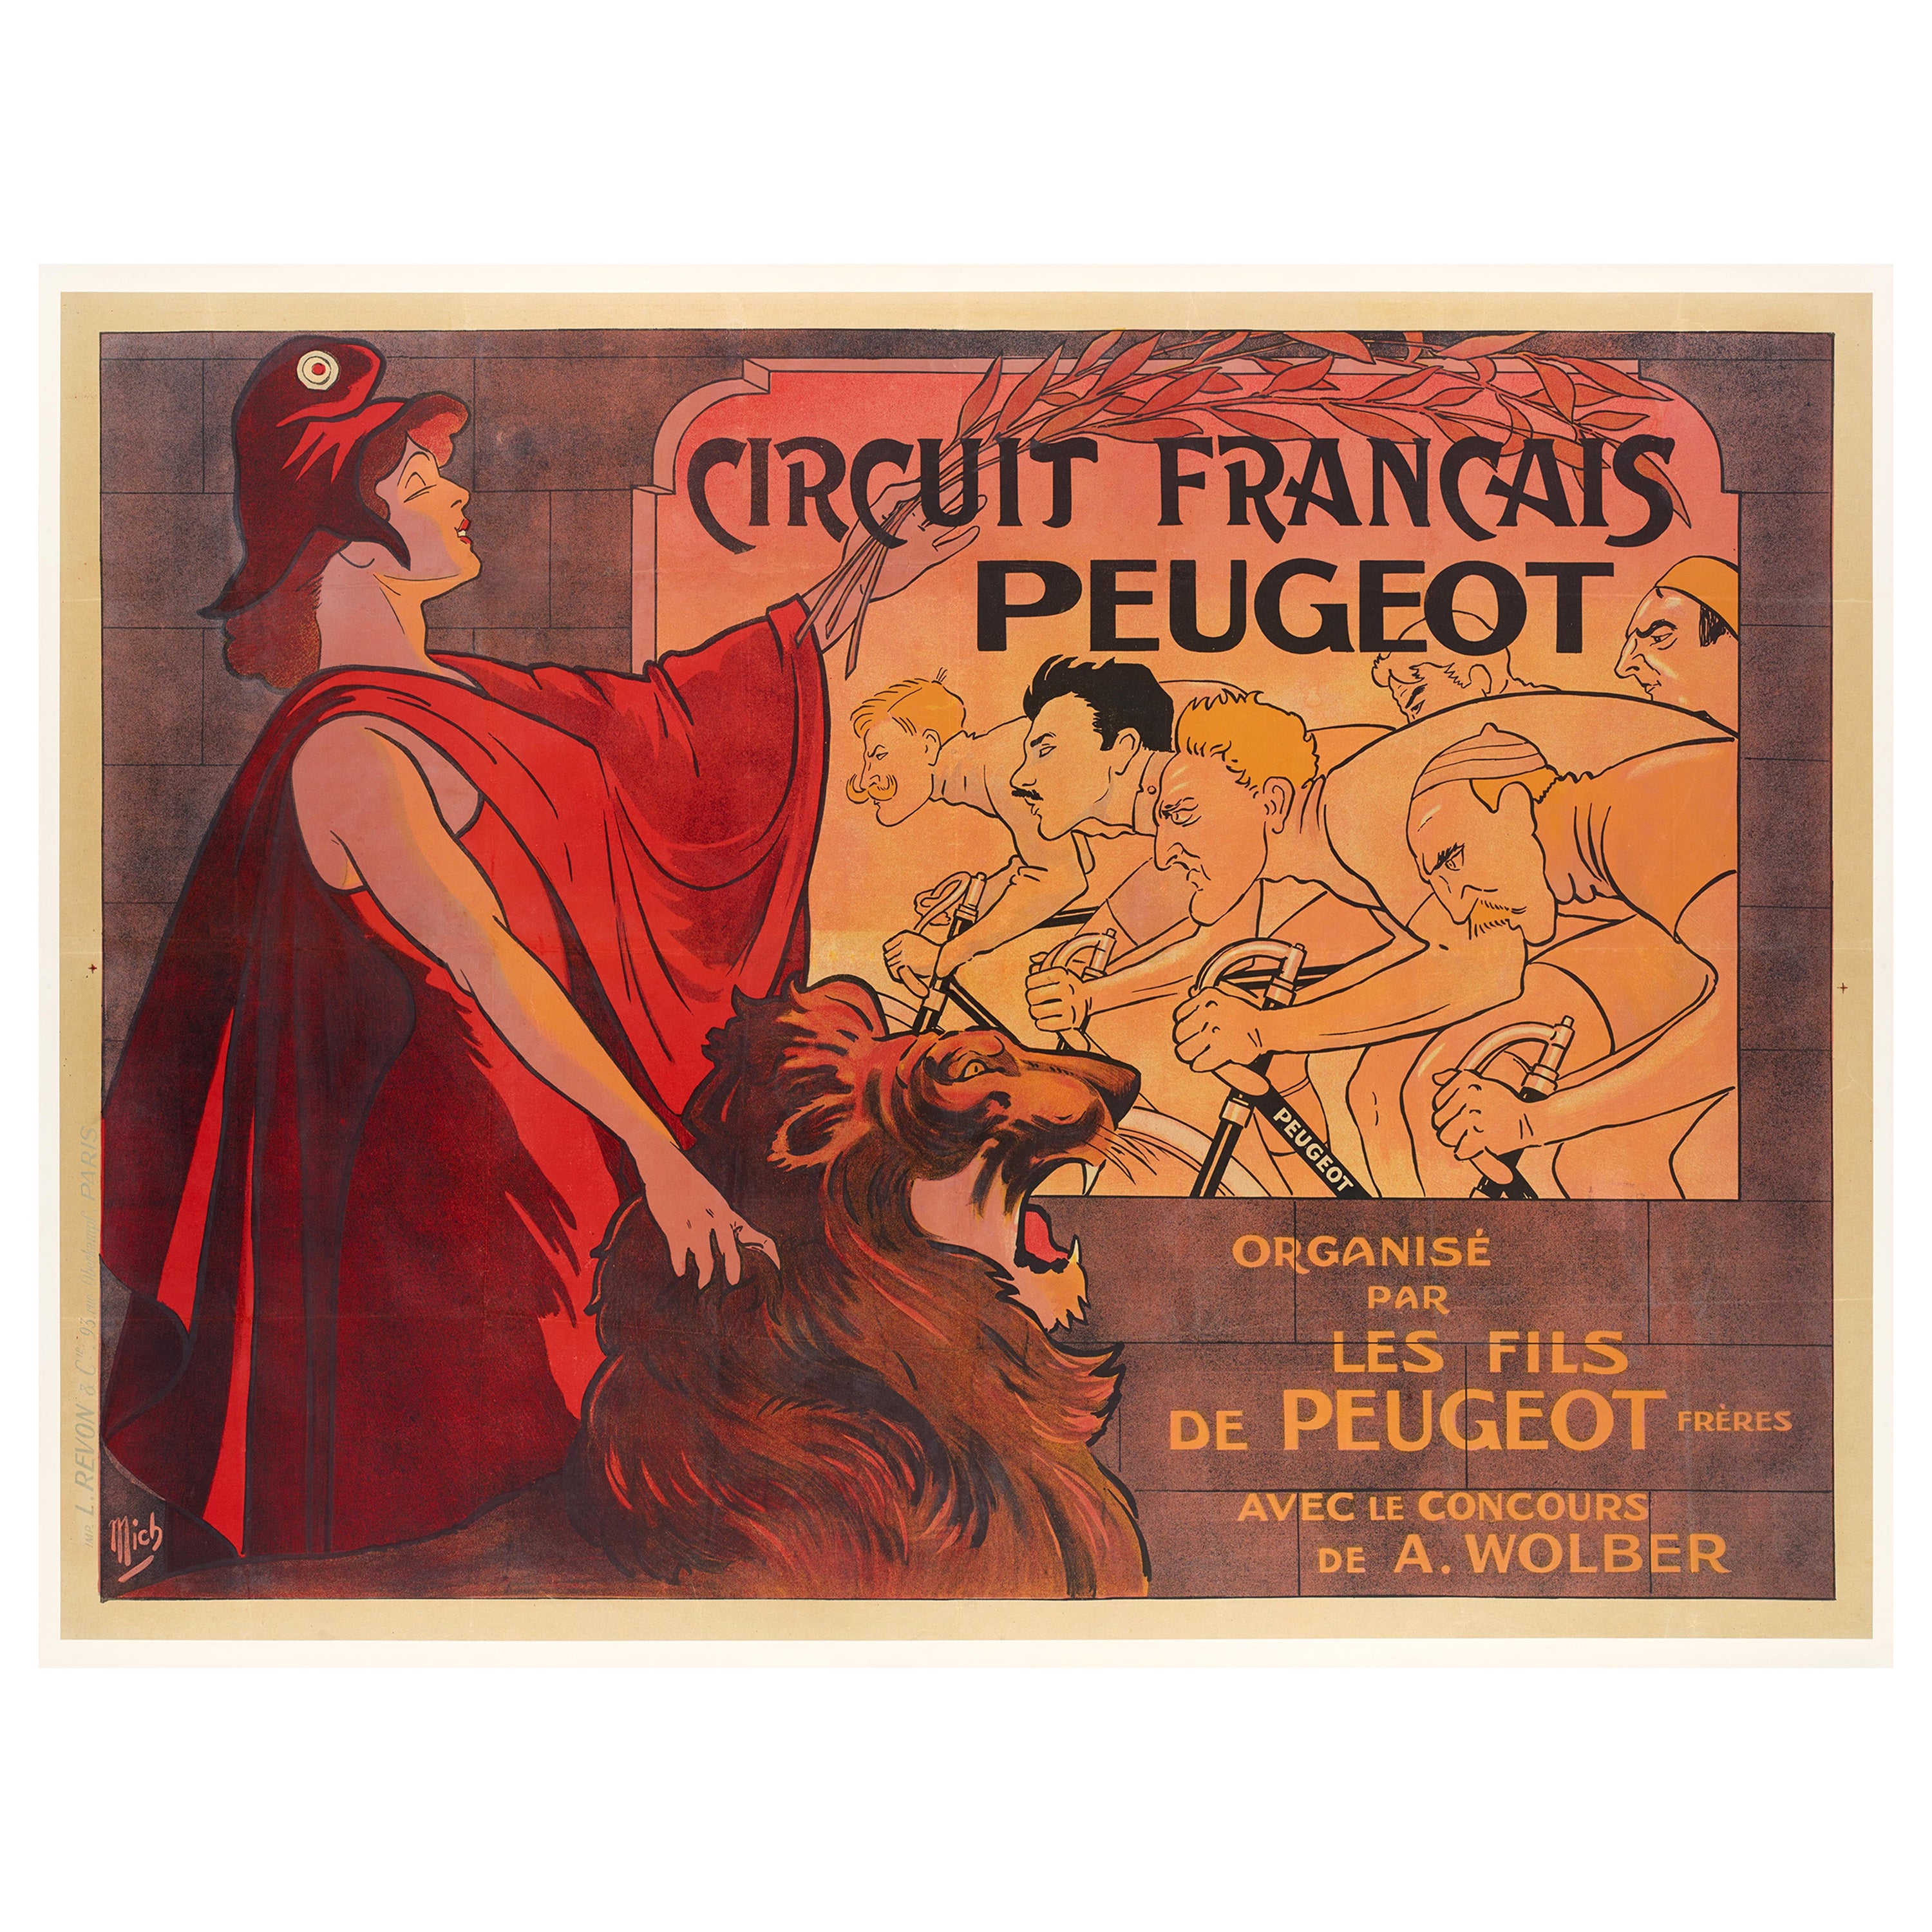 Mich, Original Vintage Poster, Circuit Francais Peugeot, Bike Race, Lion, 1911 For Sale